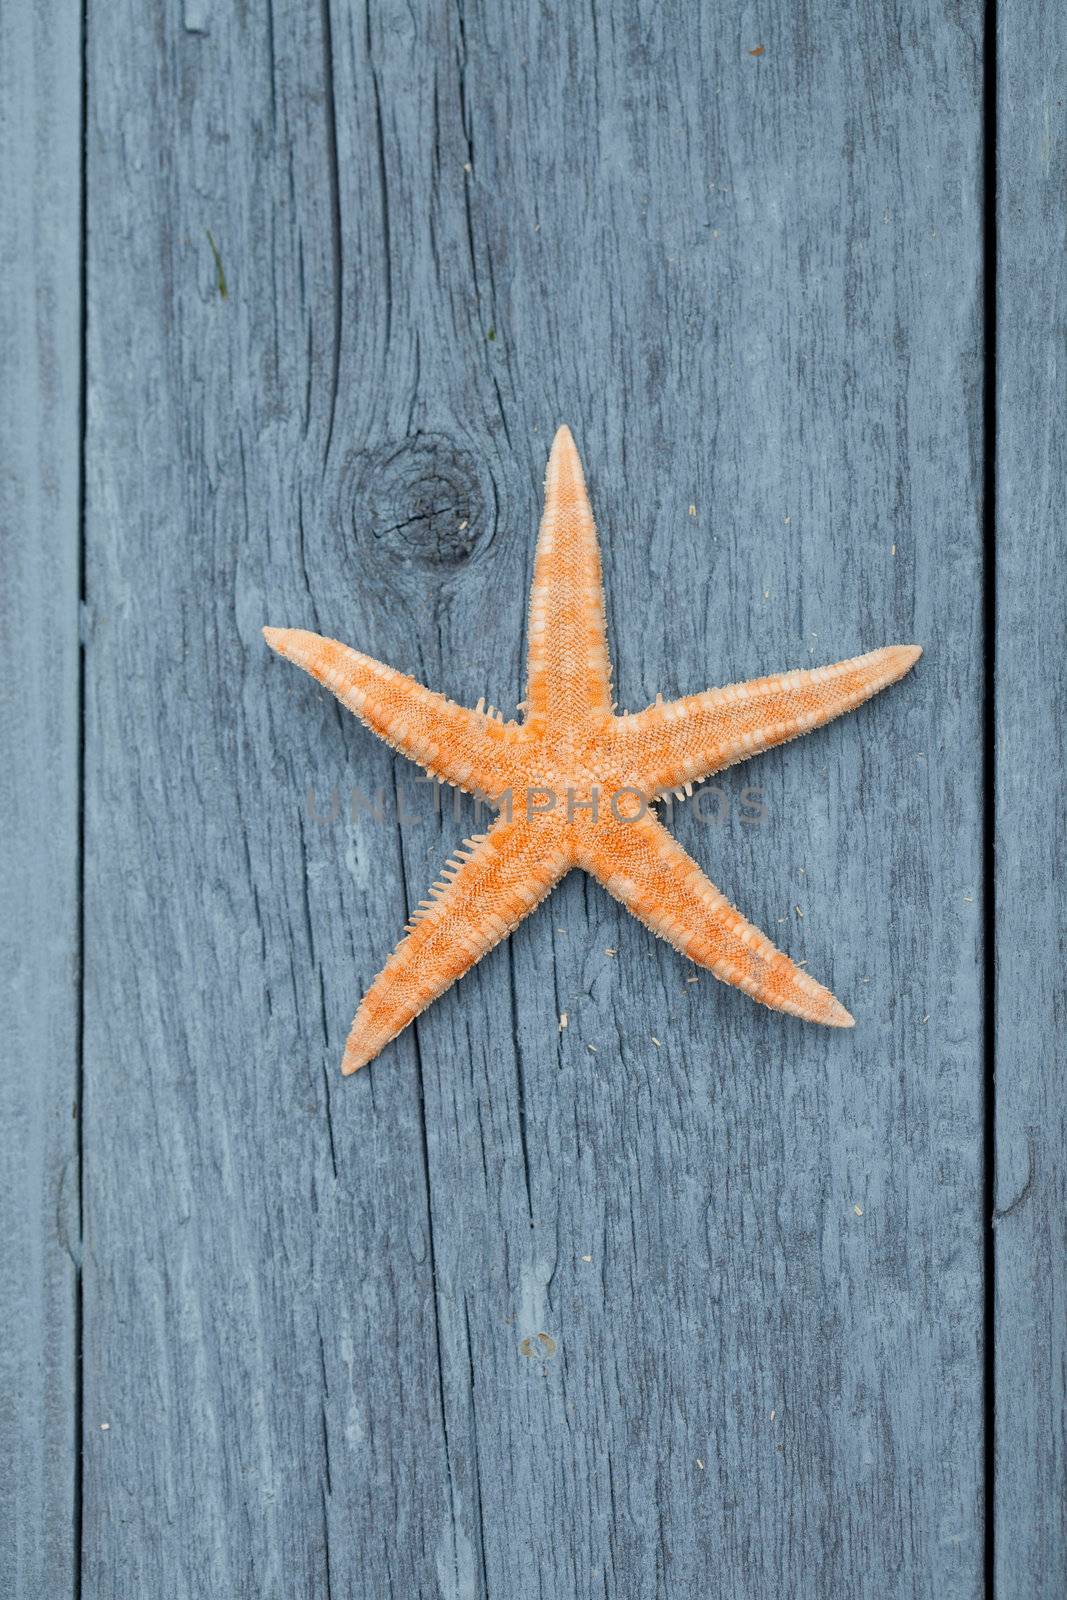 starfishs on blue wood